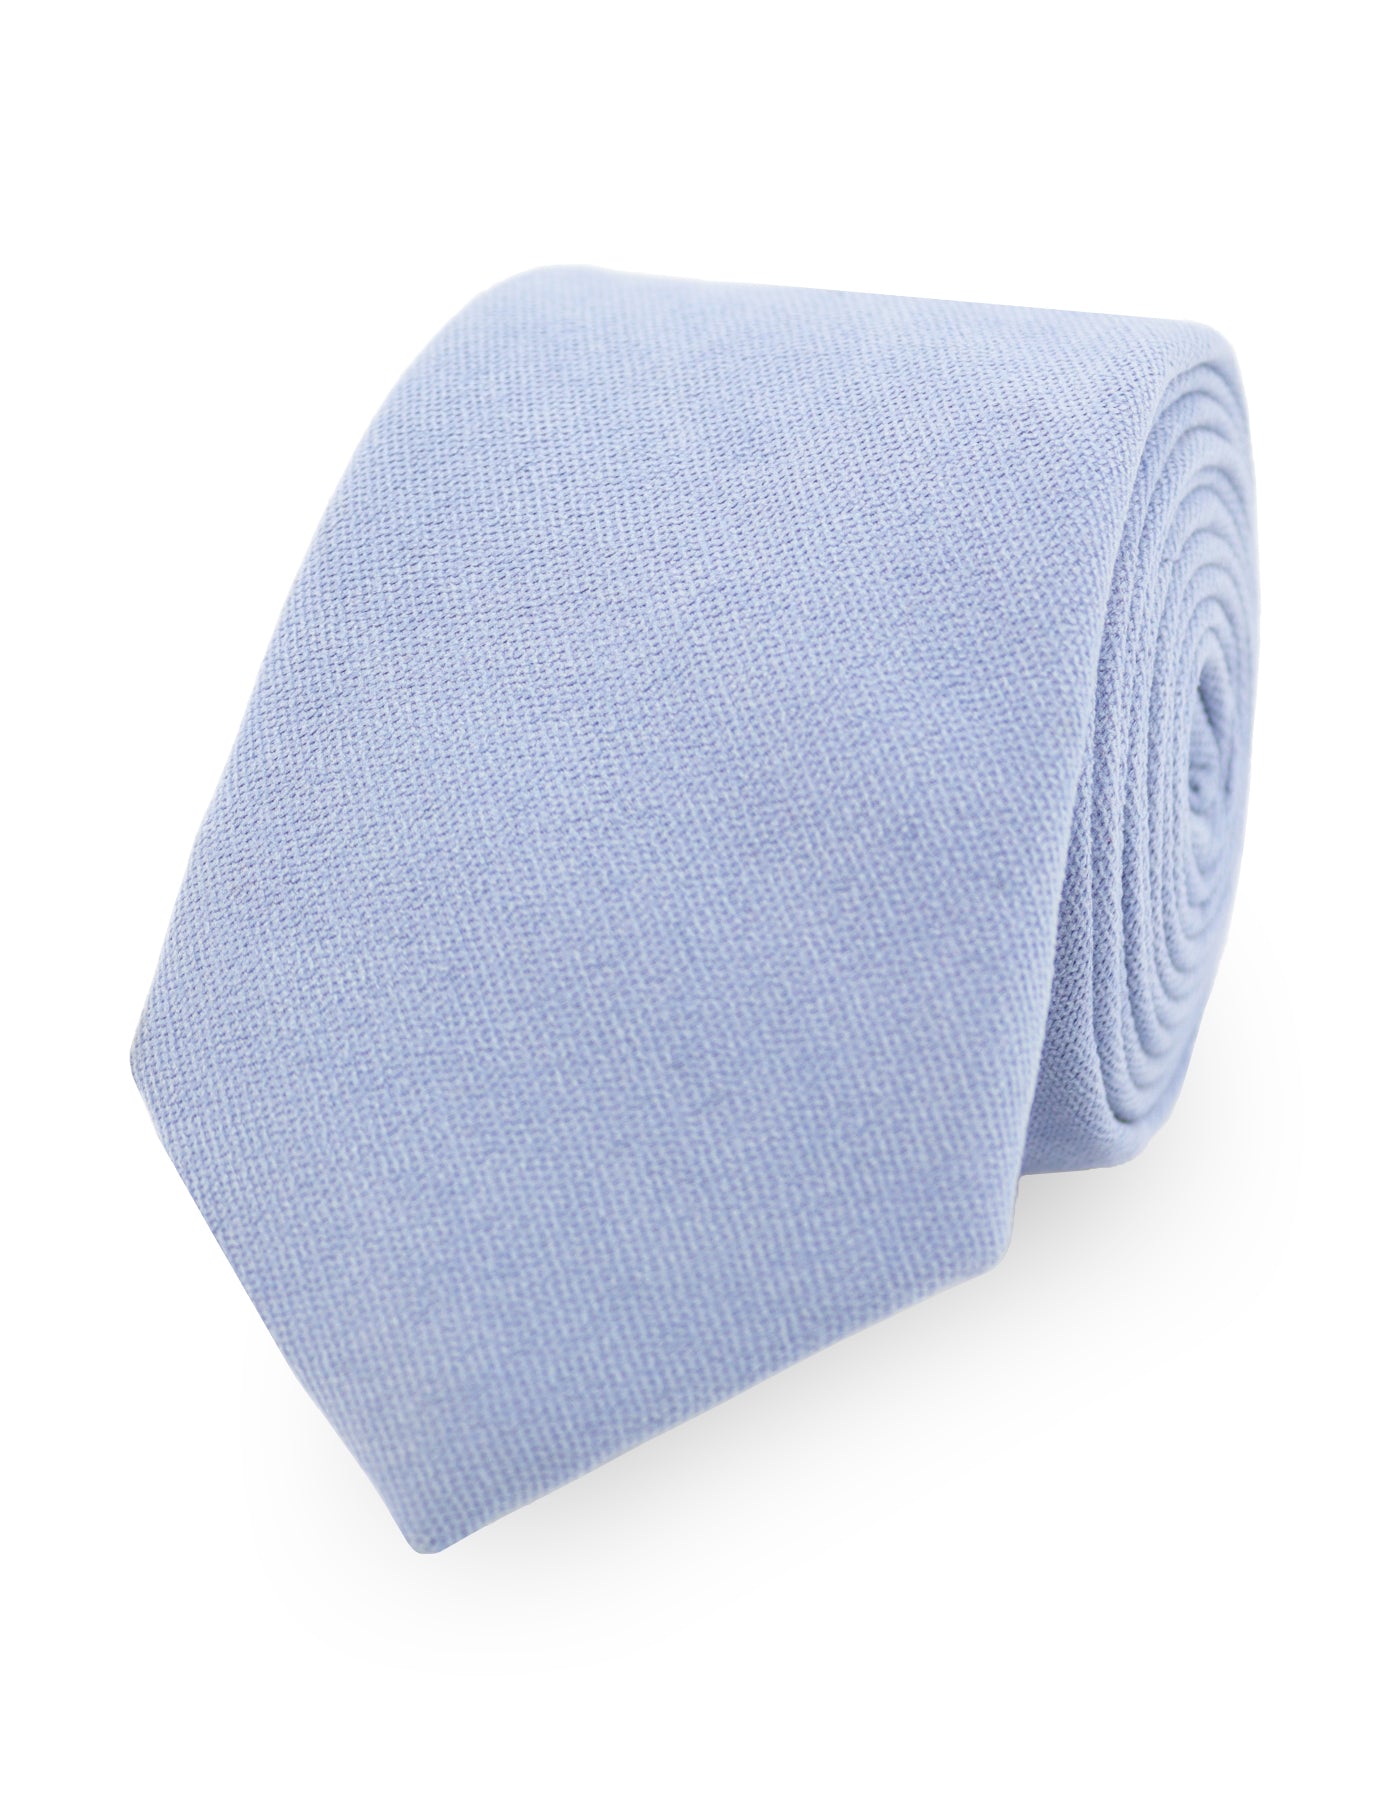 100% Brushed Cotton Suede Pocket Square - Blue